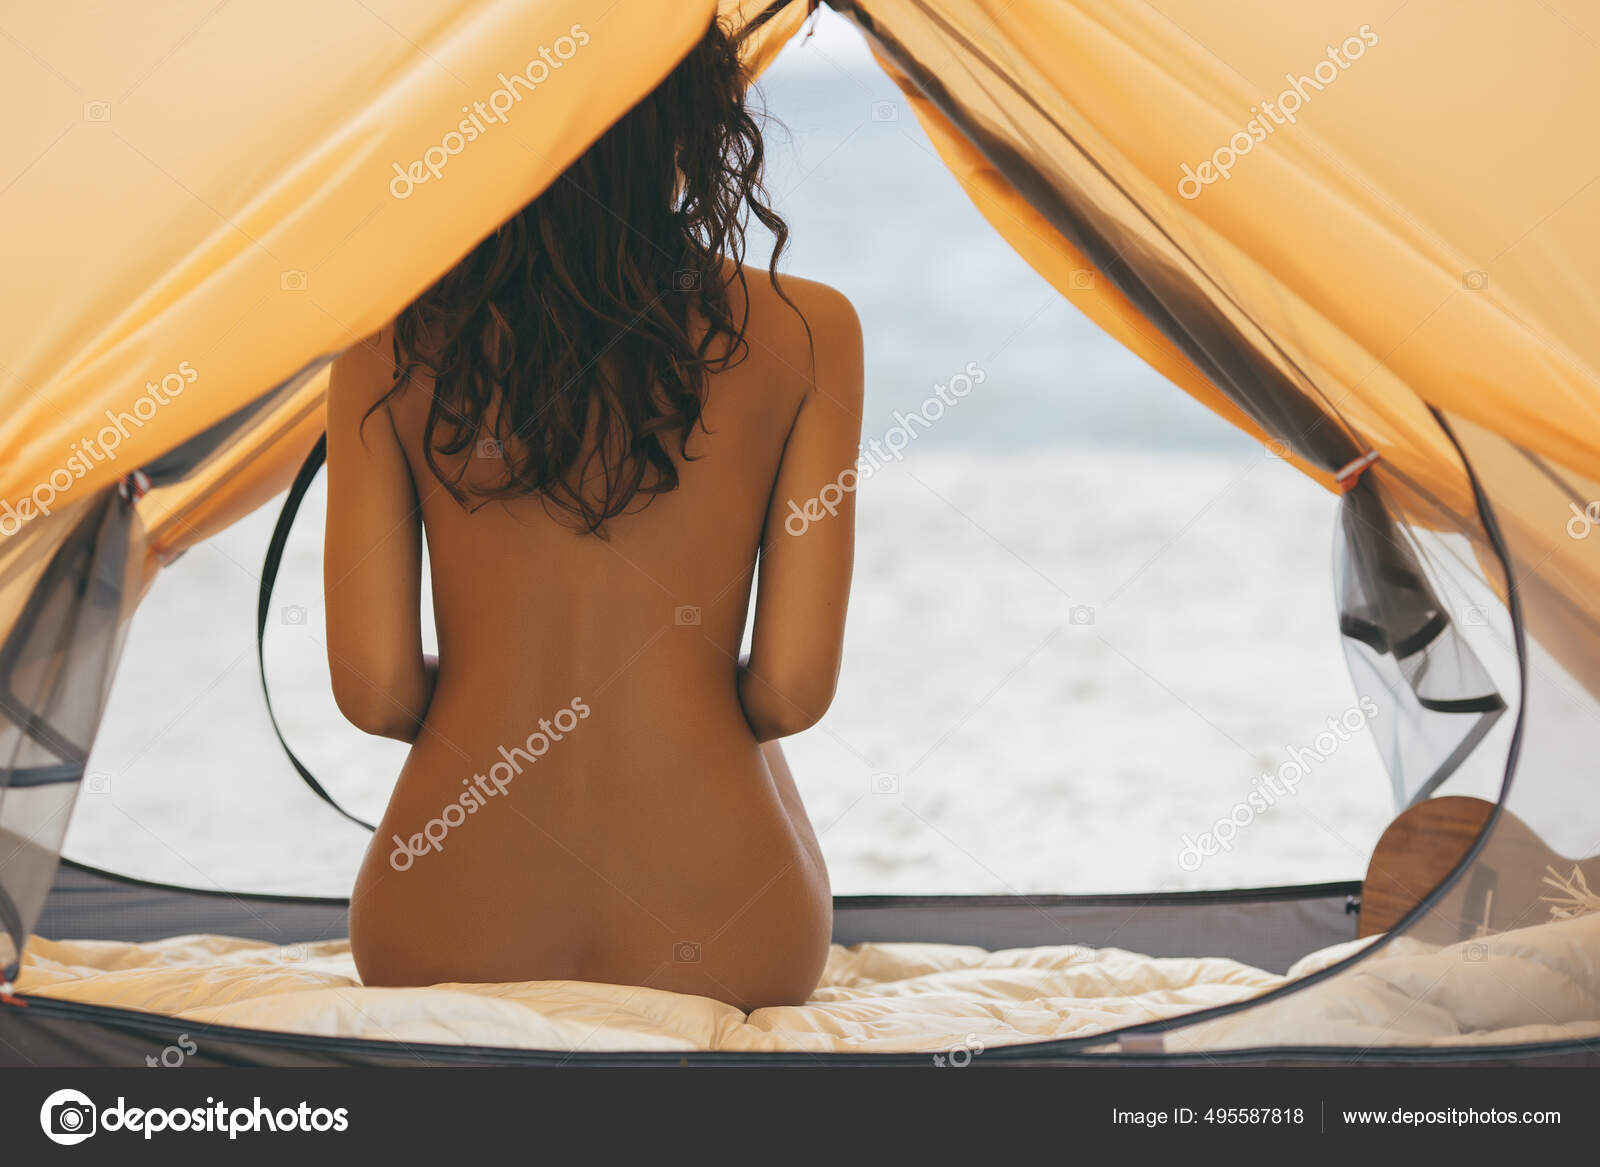 Mujer desnuda en la playa en una tienda: fotografía de stock © dimabl  #495587818 | Depositphotos